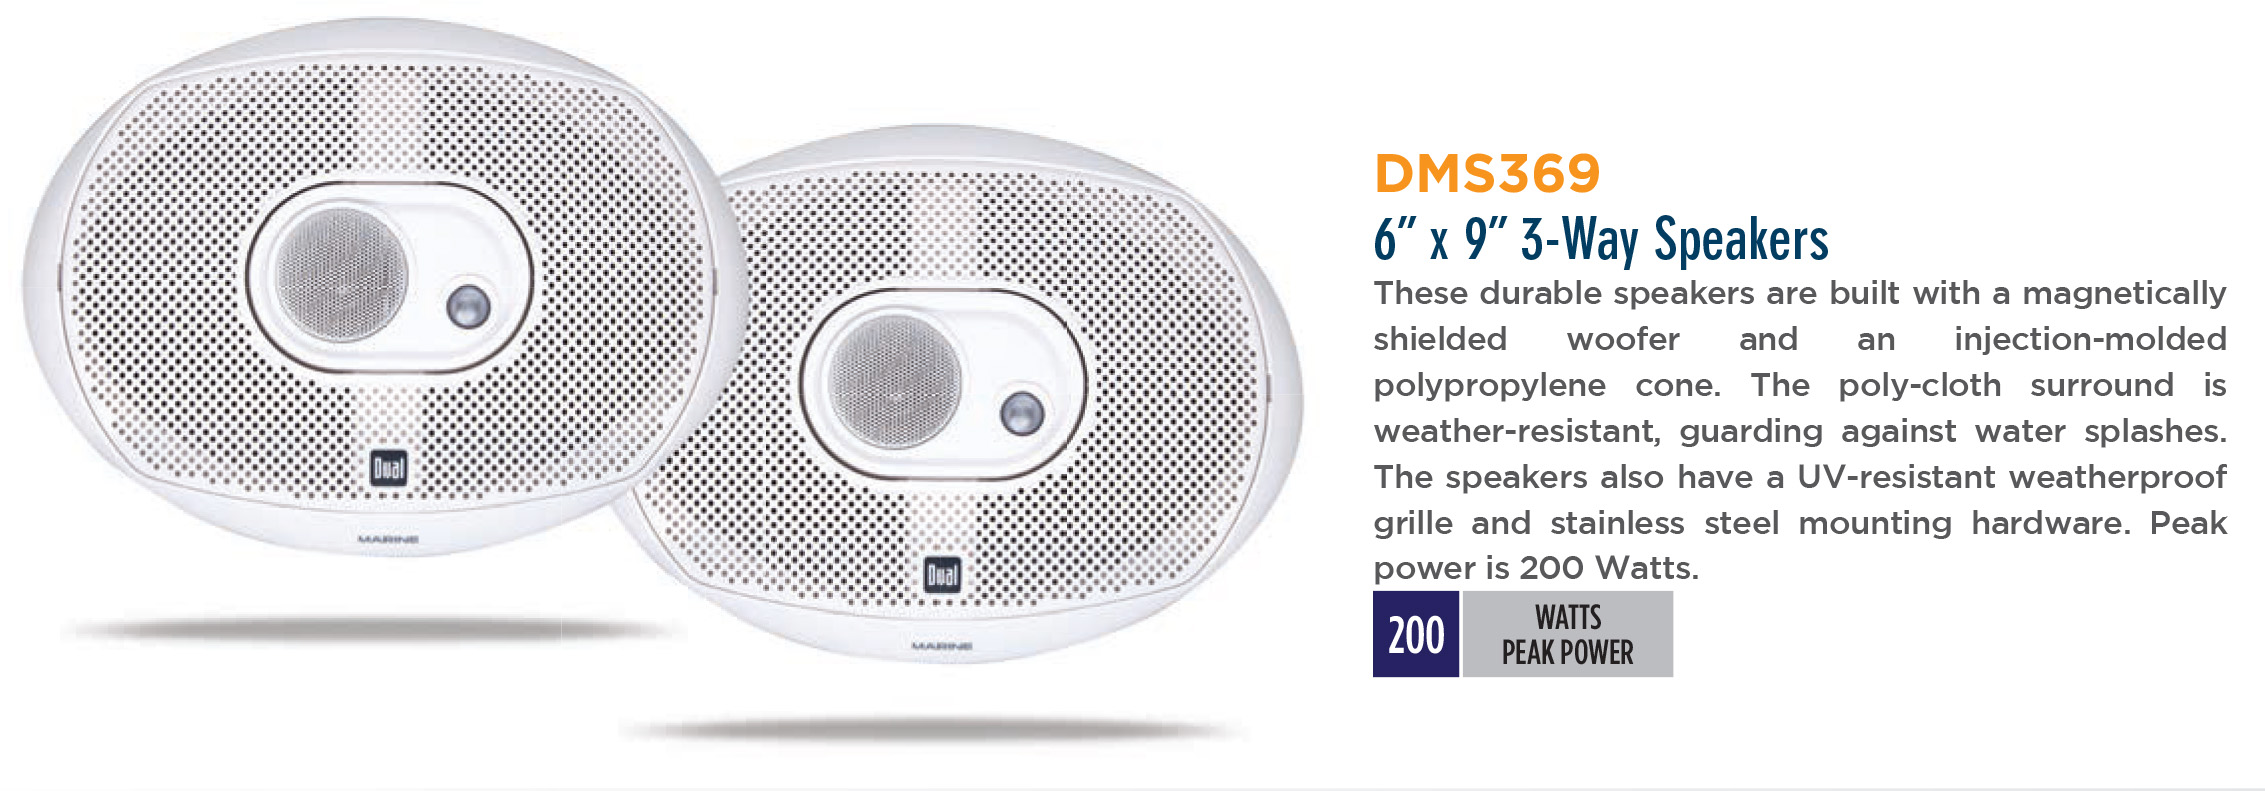 Dual Marine DMS369 Speakers